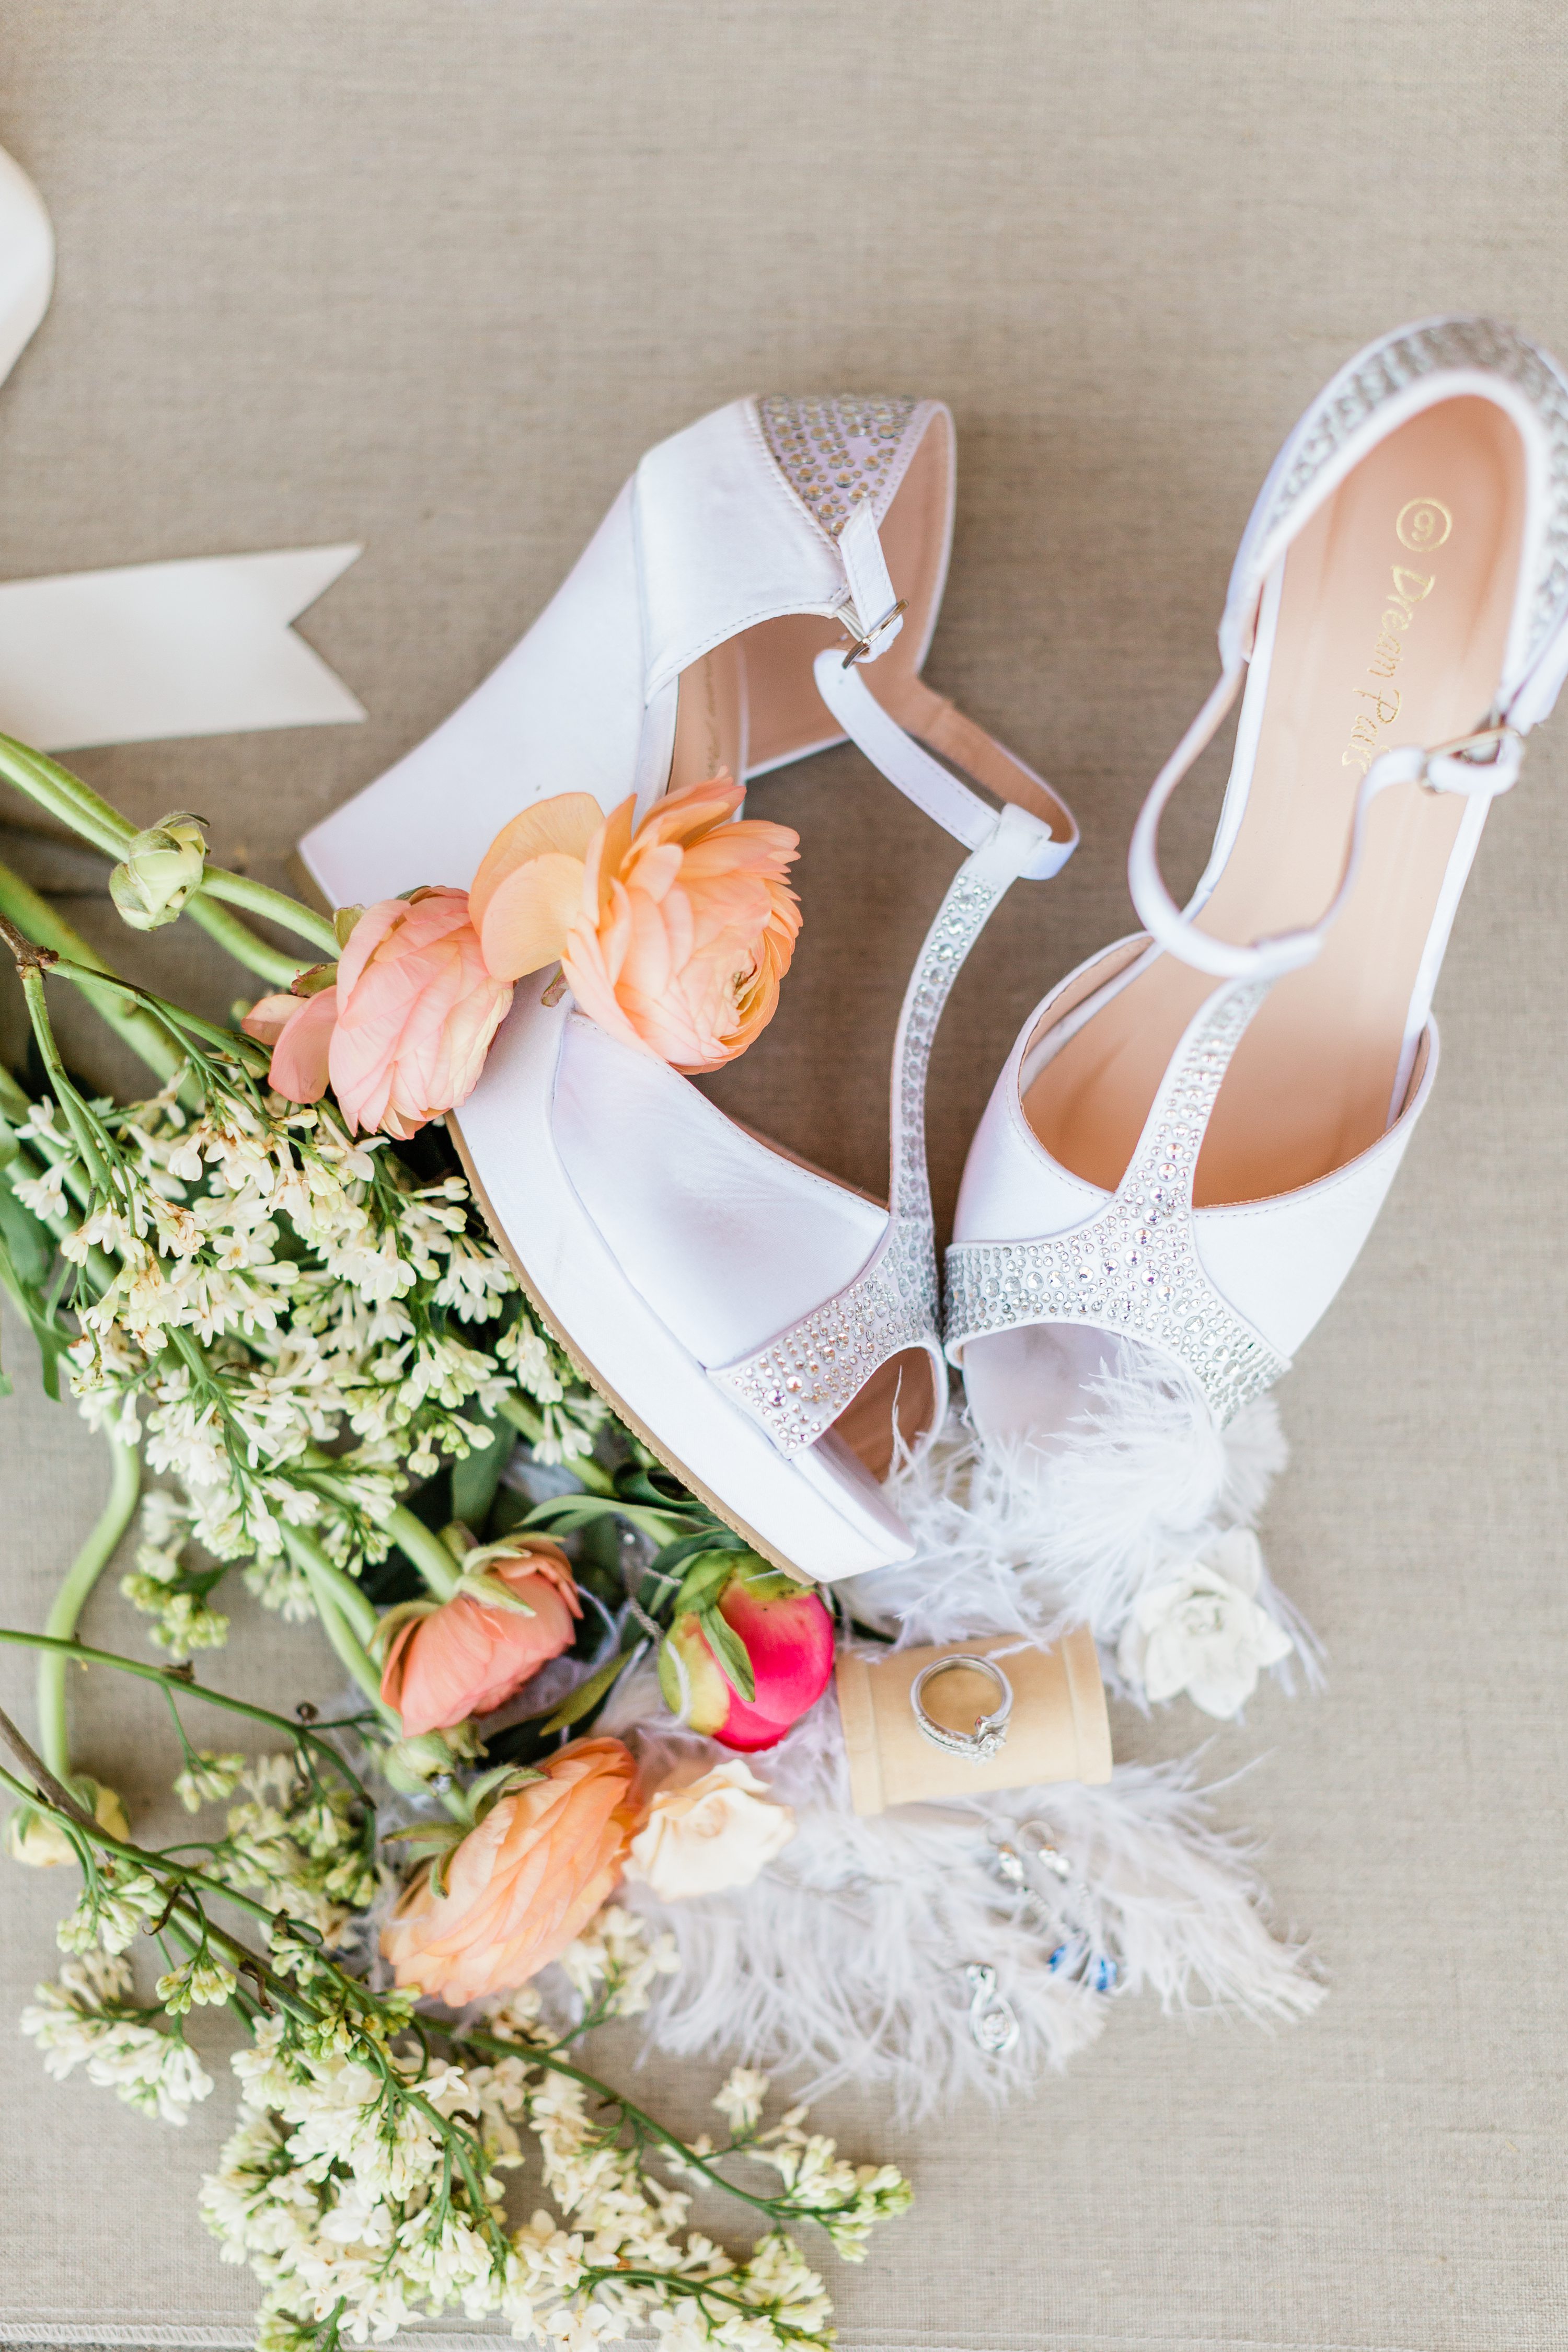 boise,wedding photographer,bridal shoes detail,bridal shoes photos